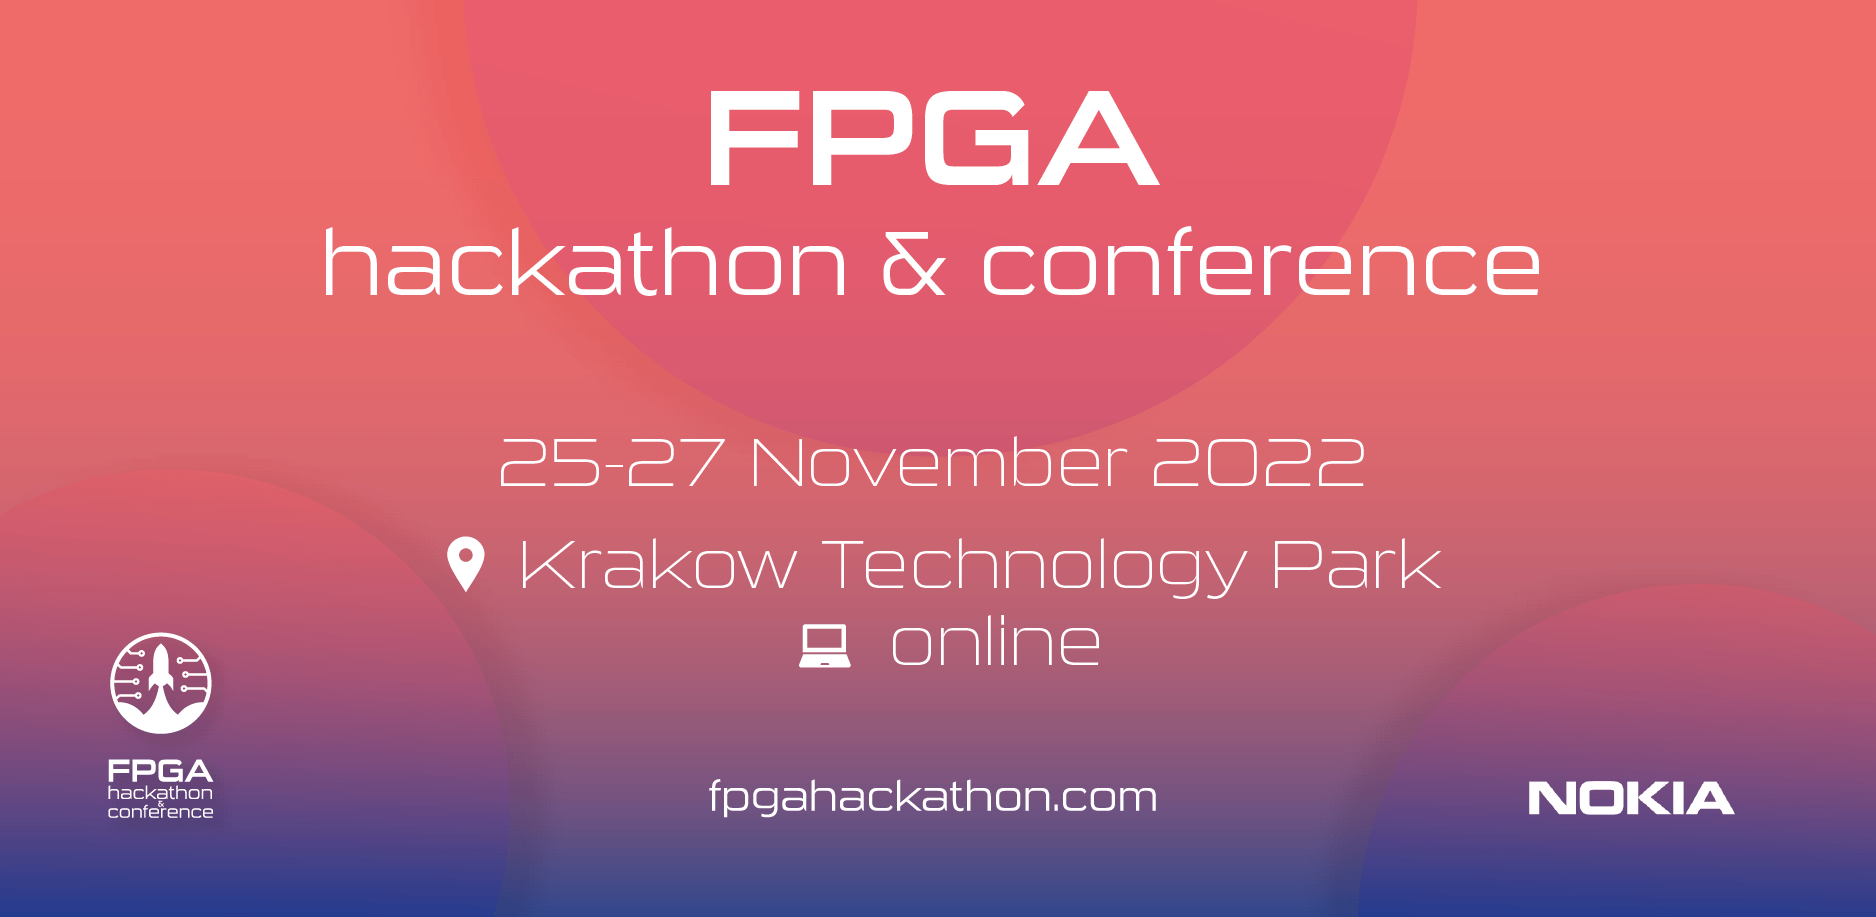 Register for the FPGA Hackathon&Conference 2022